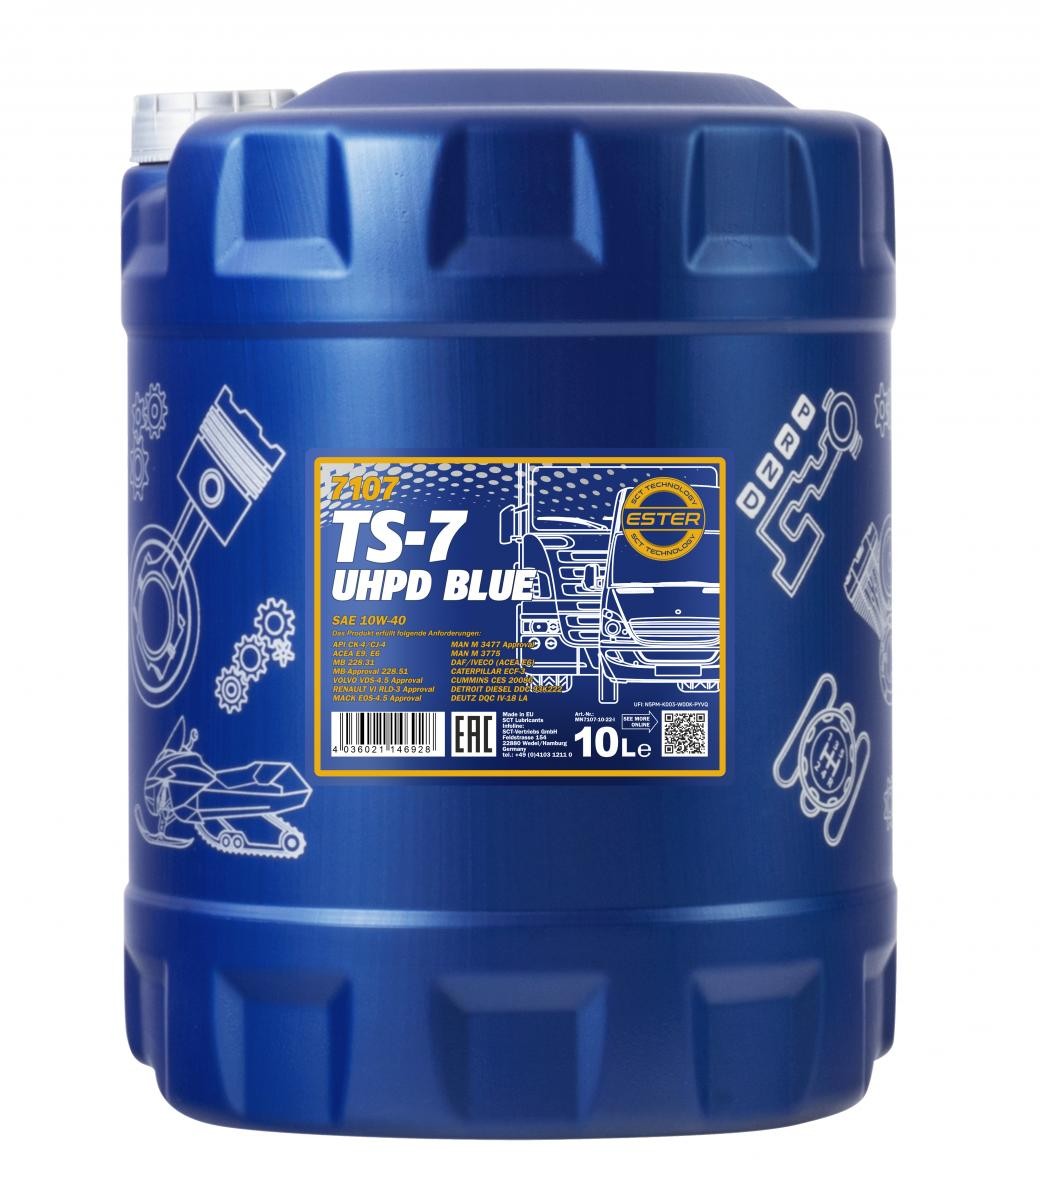 Öl 10W-40 teilsynthetisches - MN7107-10 MANNOL TS-7, UHPD Blue